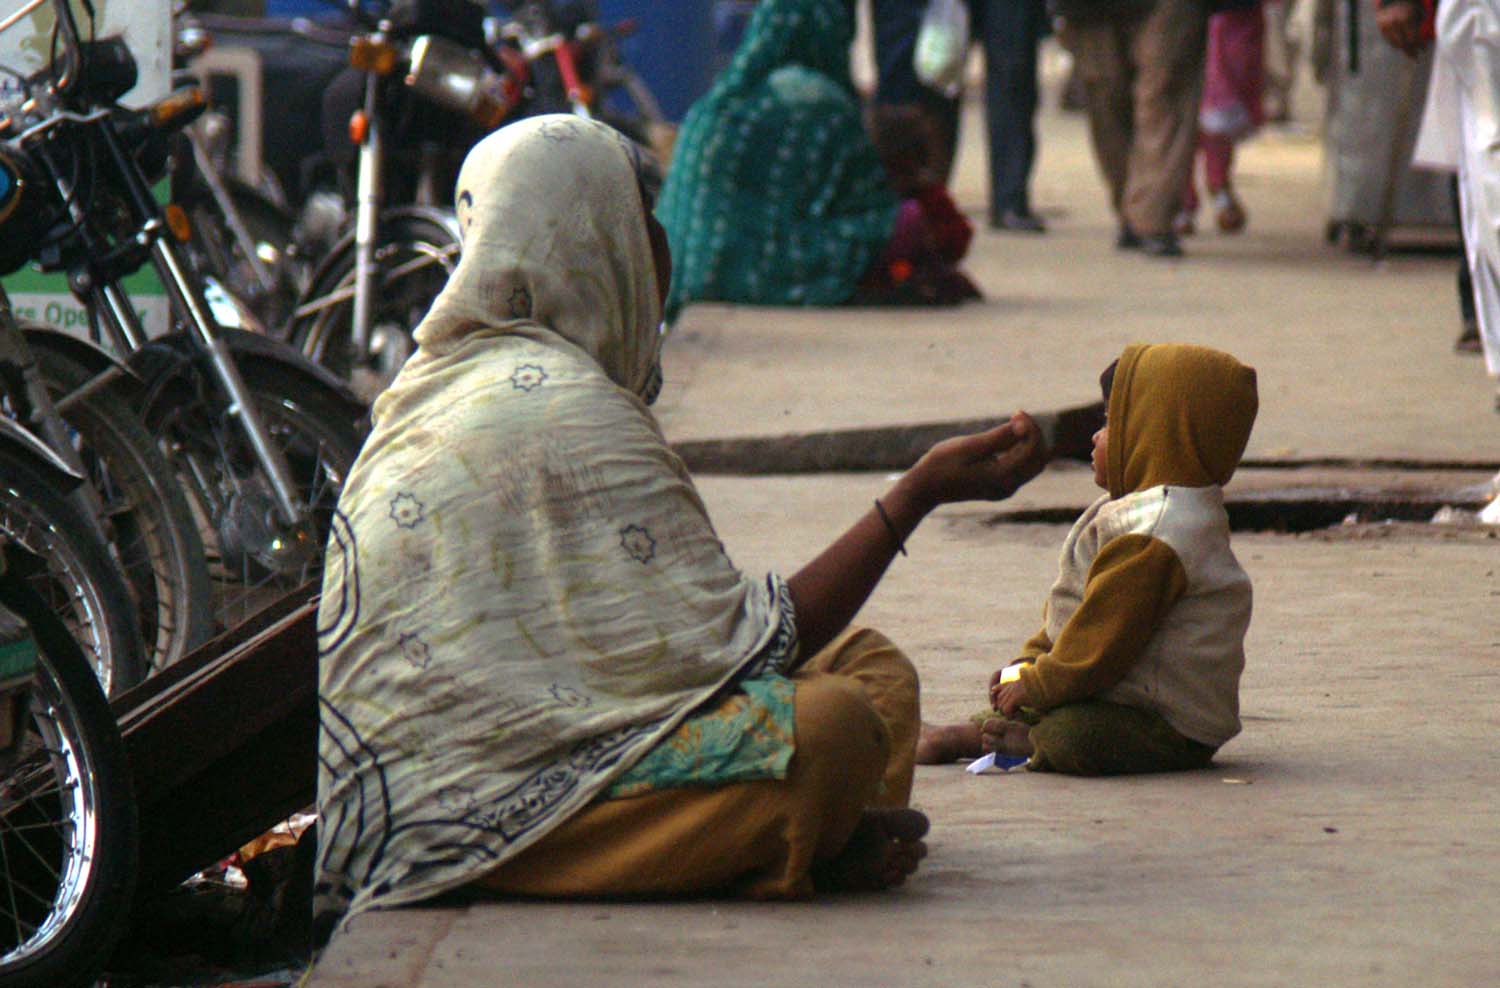 Begging, Beggars, Ban on begging, Begging ban at religious places, Begging ban at public places, Srinagar, Jammu and Kashmir, National news